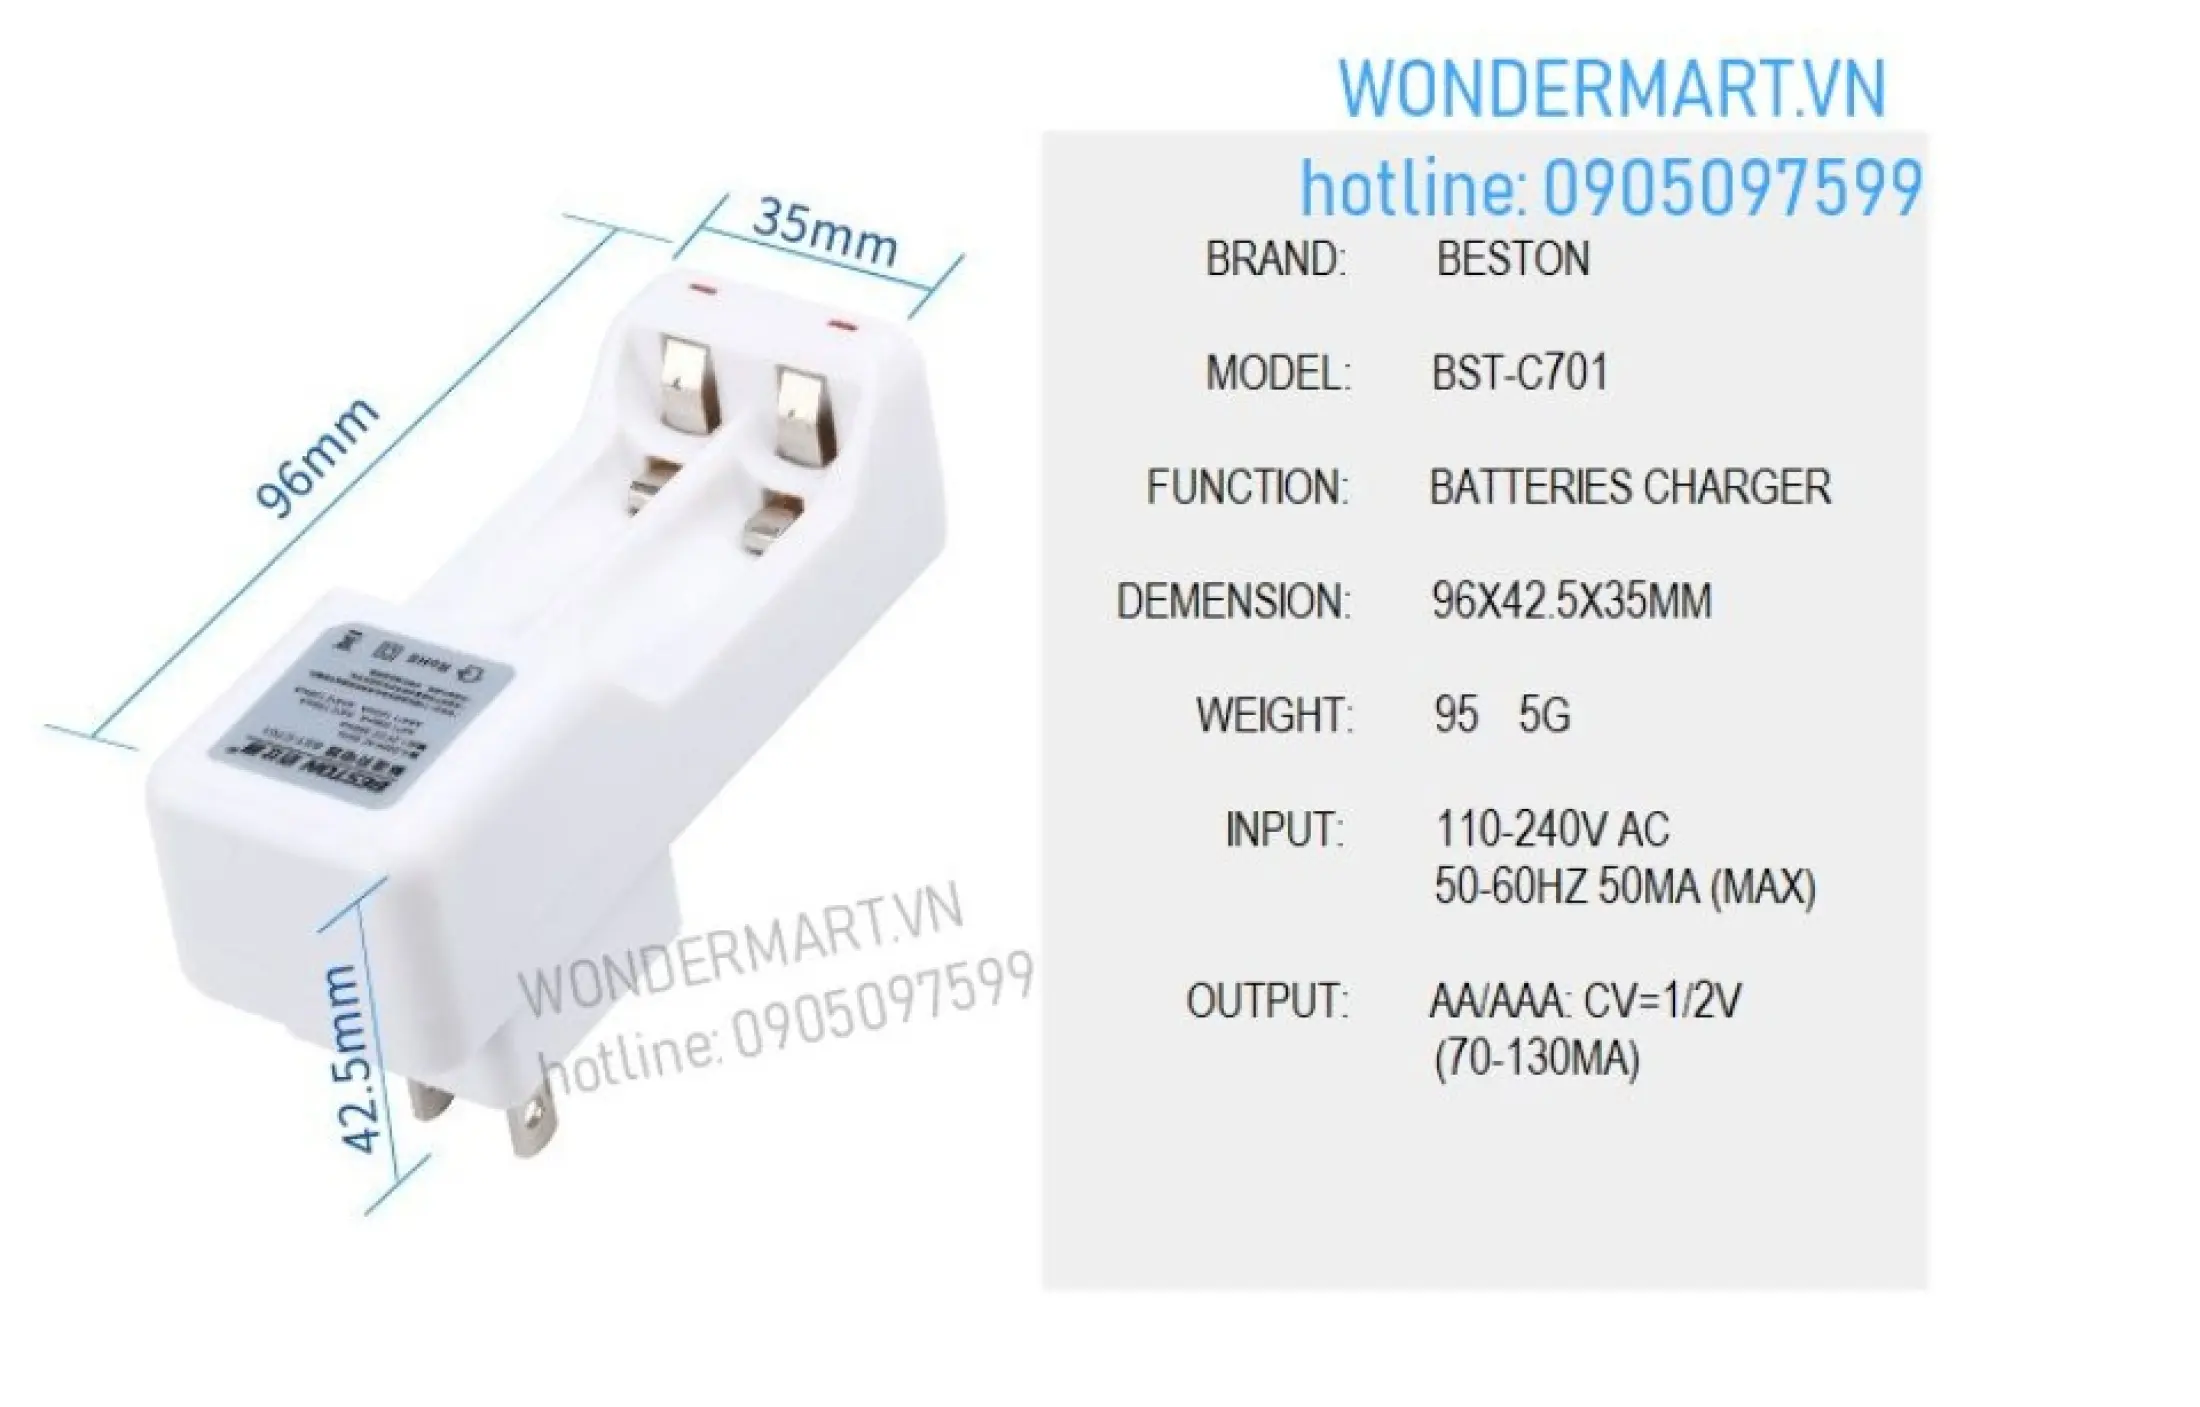 Product details of Bộ sạc pin Beston AA/AAA 2 cổng kèm 2 pin AA 1.2V 3000mAh chuyên micro không dây